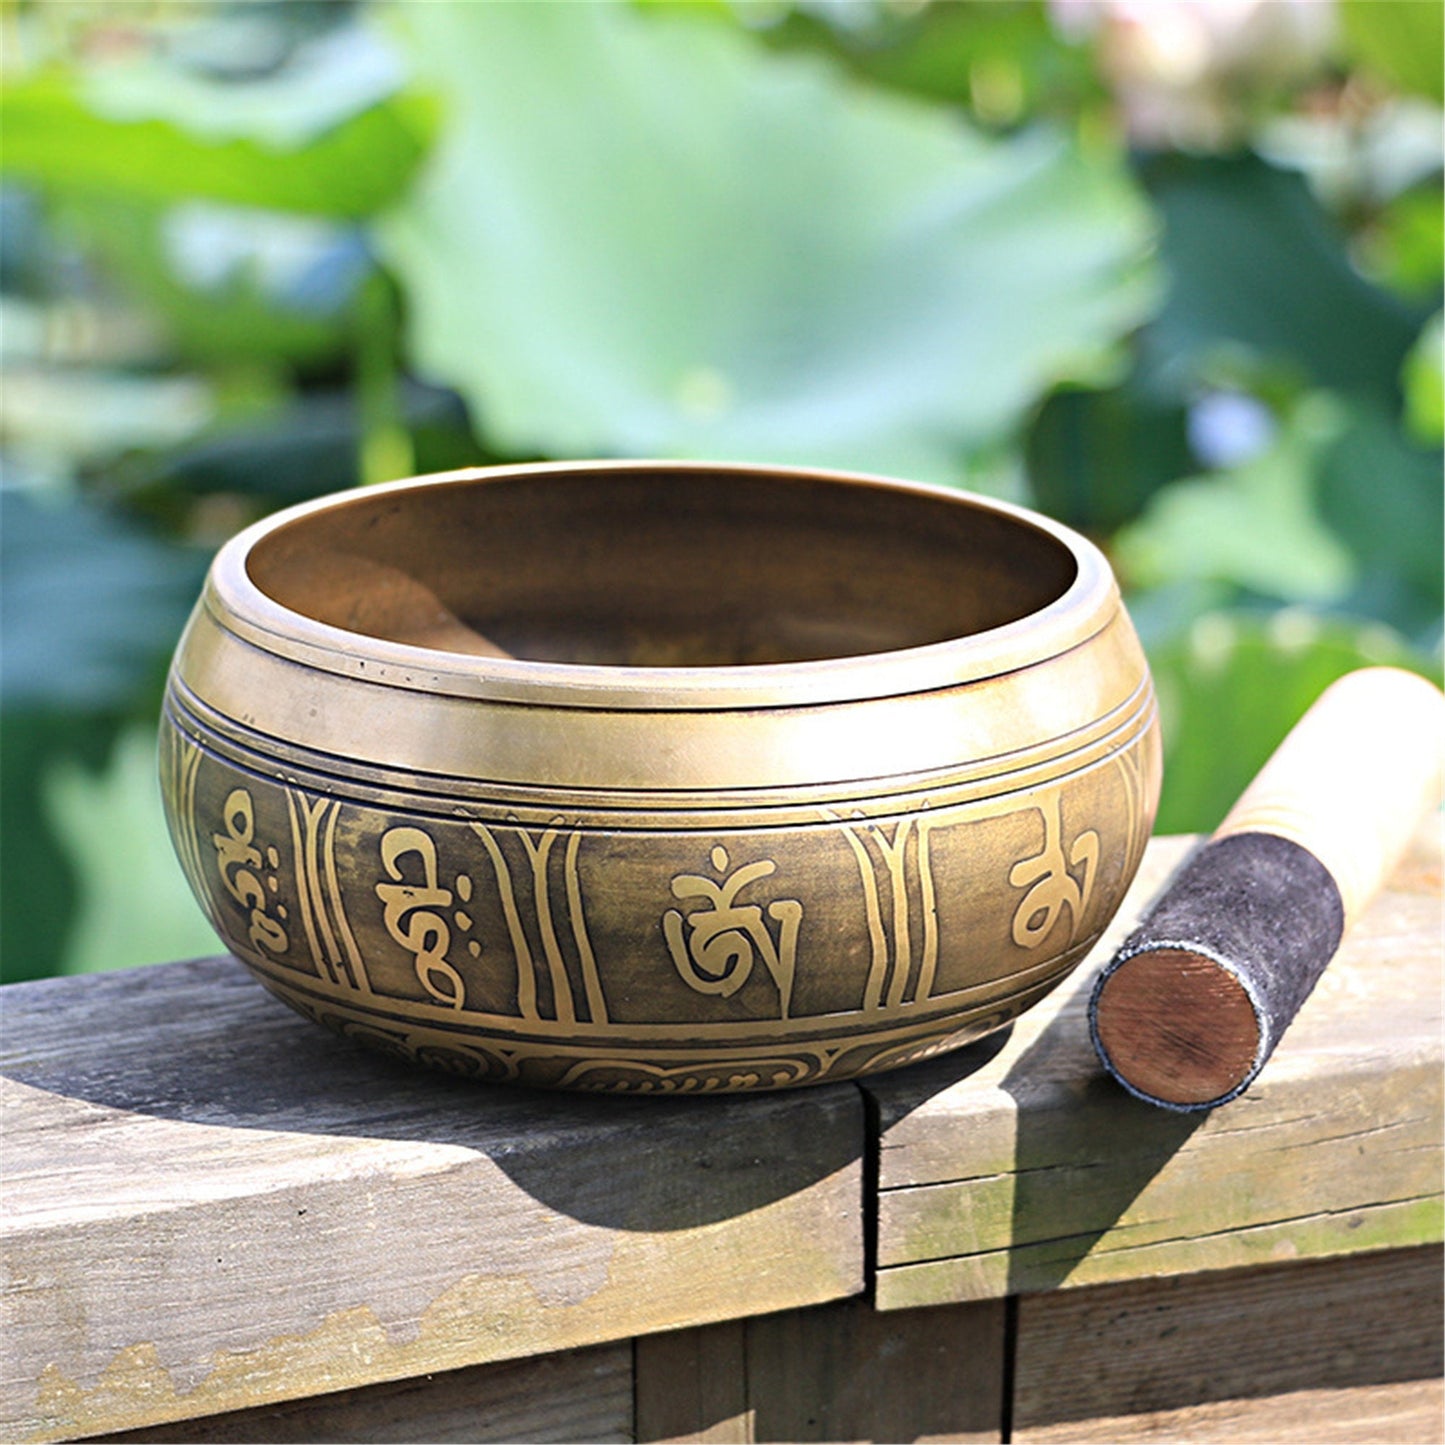 Gandhanra 4.2”- 6.5” Tibetan Singing Bowl,Engraved with Buddhism Mantra Cross Vajra